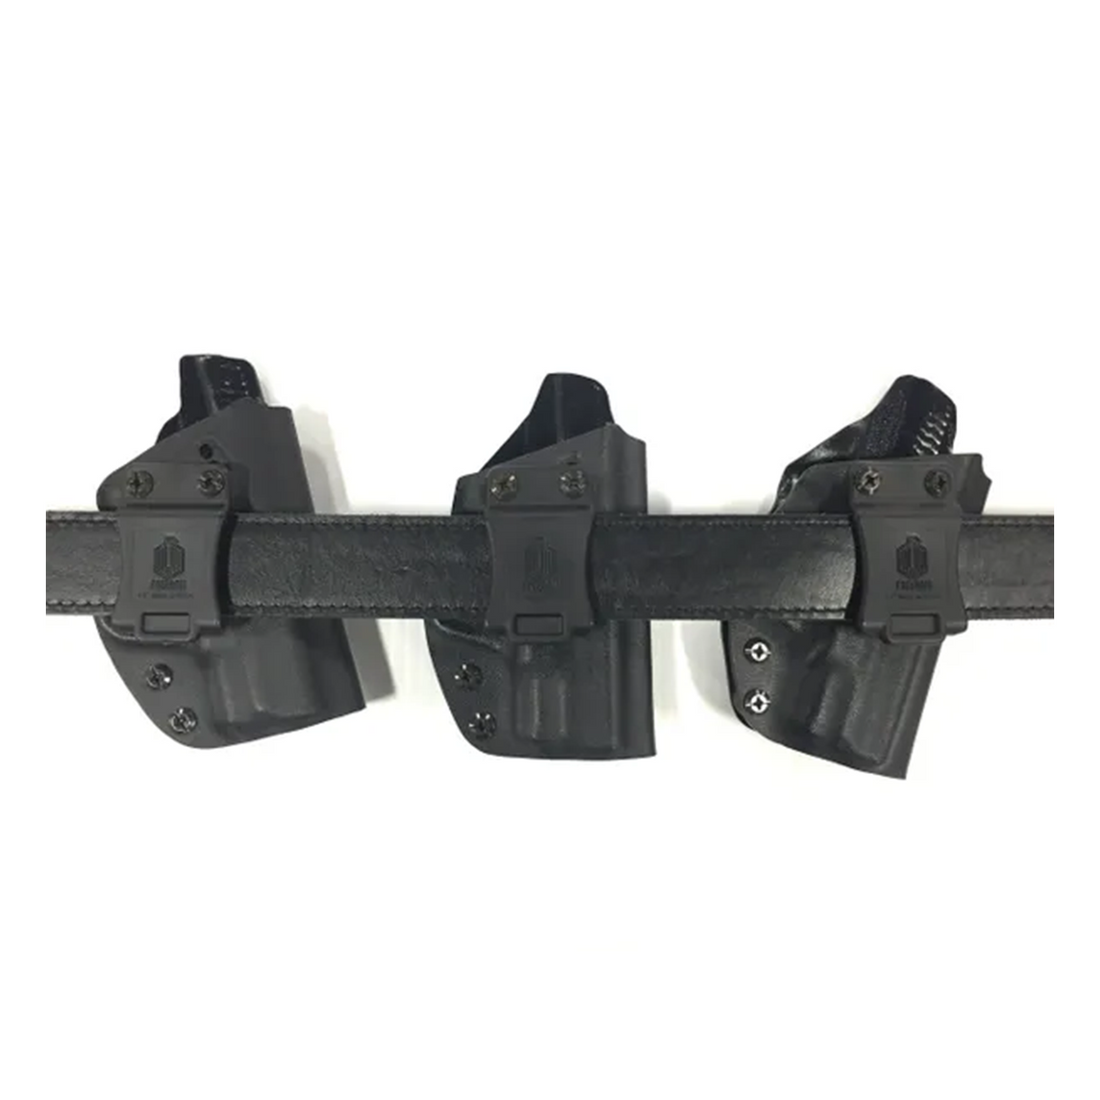 Glock IWB/OWB 2-n-1 Paddle Holsters